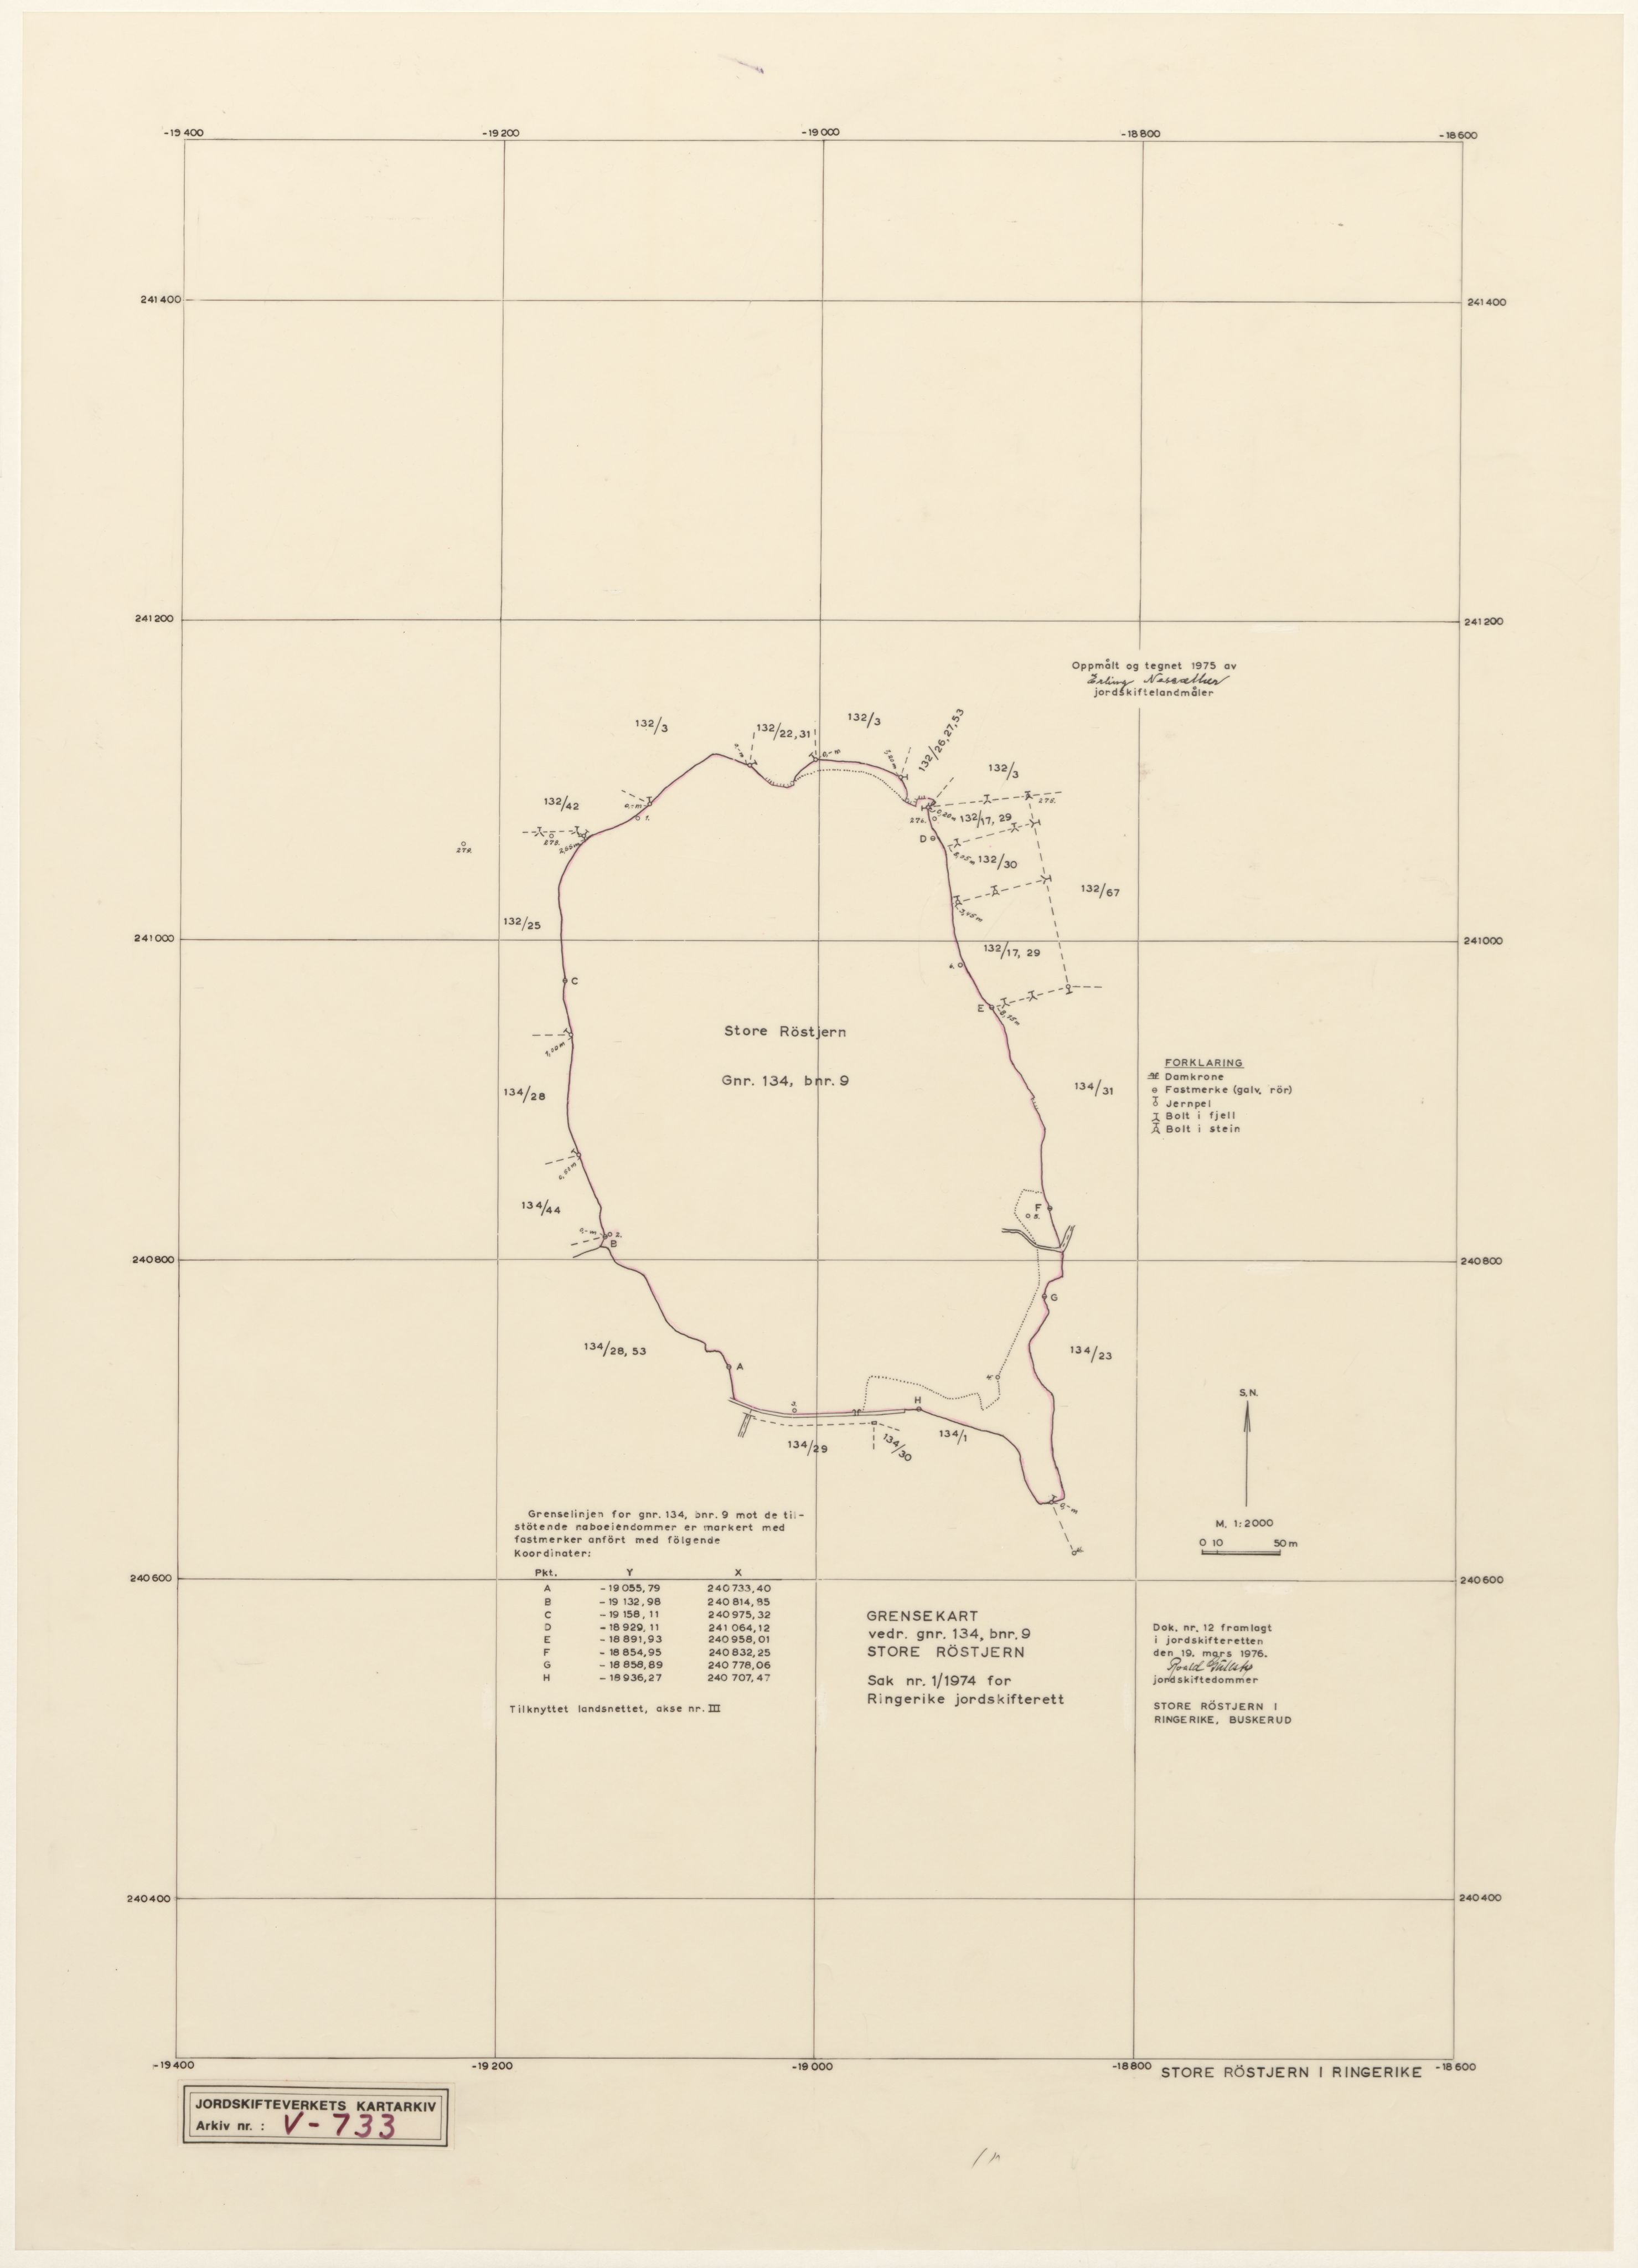 Jordskifteverkets kartarkiv, RA/S-3929/T, 1859-1988, p. 1012